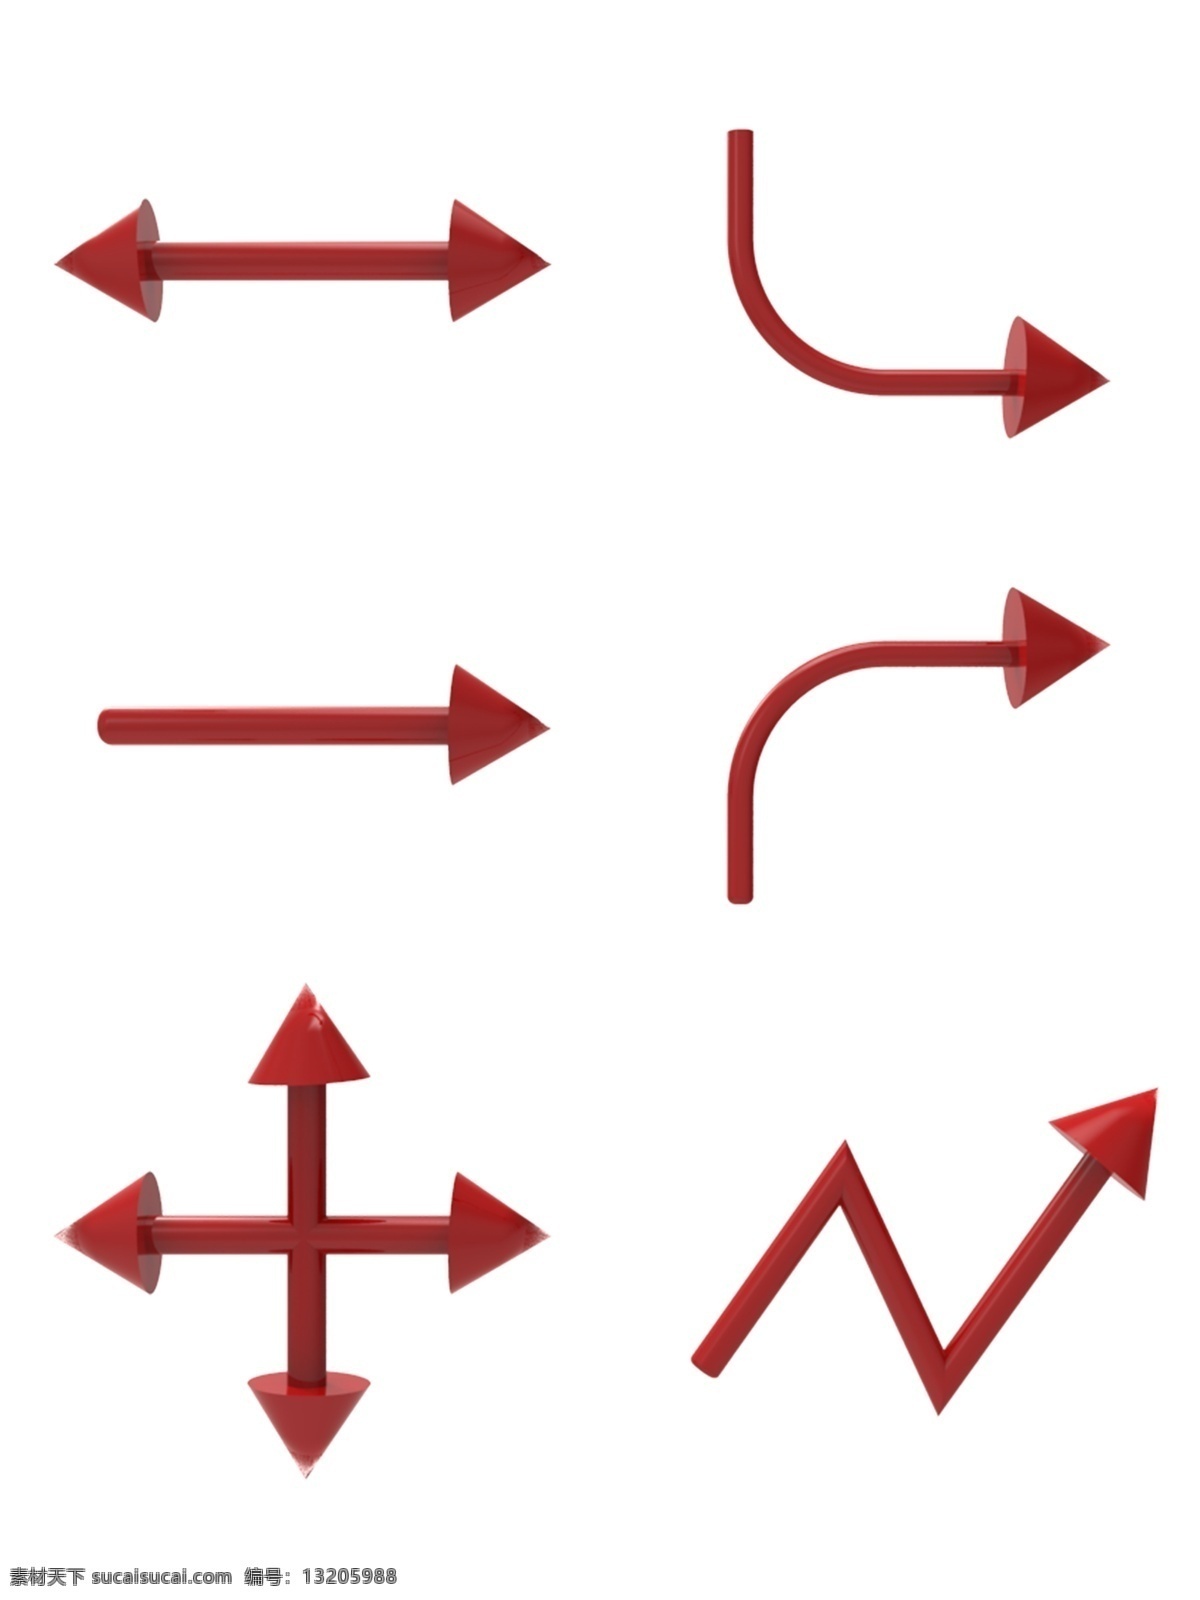 立体 箭头 套 图 红色 商用 元素 立体箭头 双向箭头 十字箭头 折线箭头 单向箭头 左拐箭头 右拐箭头